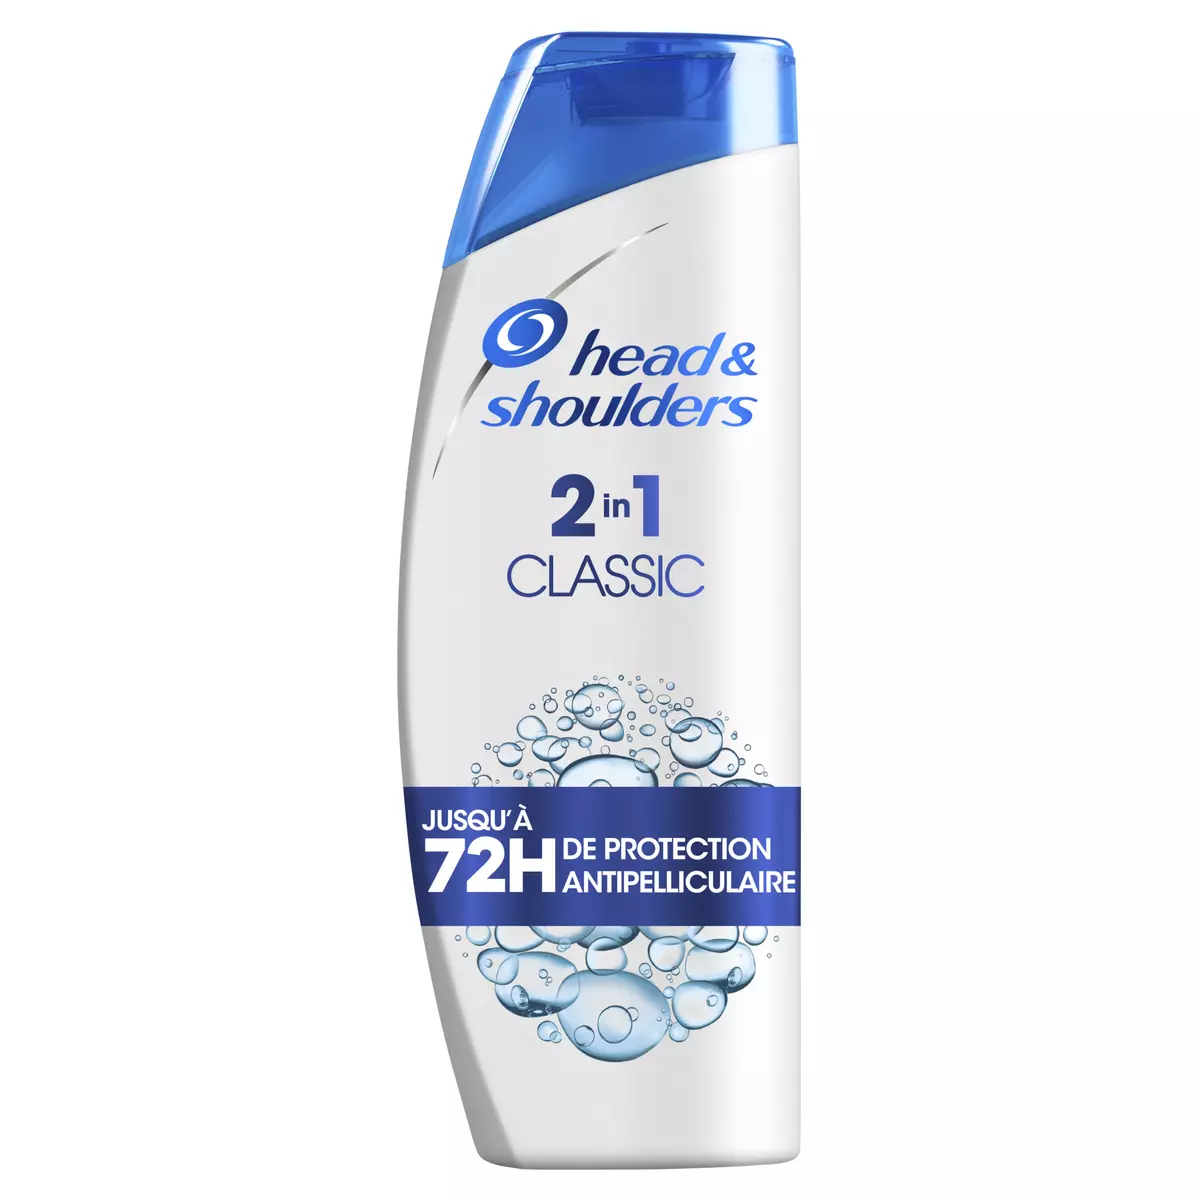 HEAD & SHOULDERS Shampooing anti pelliculaire 2 en 1 classic jusqu'à 72h de protection 270ml